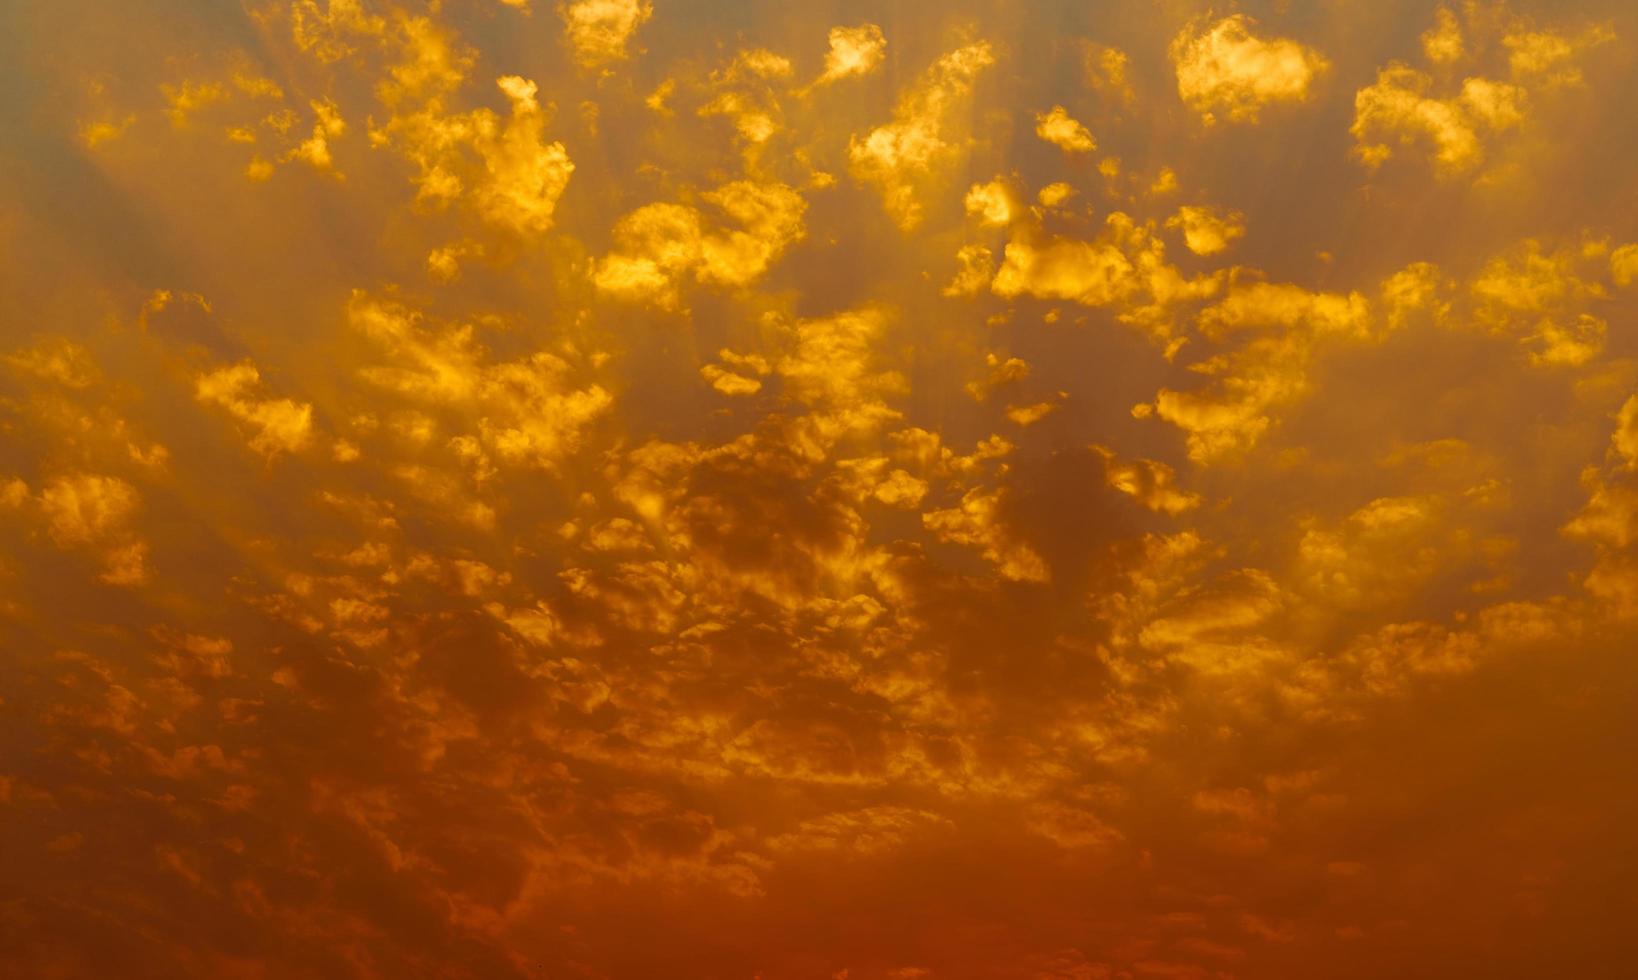 lindo céu por do sol. céu dourado do sol com belo padrão de nuvens. nuvens laranja, amarelas e vermelhas à noite. liberdade e fundo calmo. beleza na natureza. cena poderosa e espiritual. foto